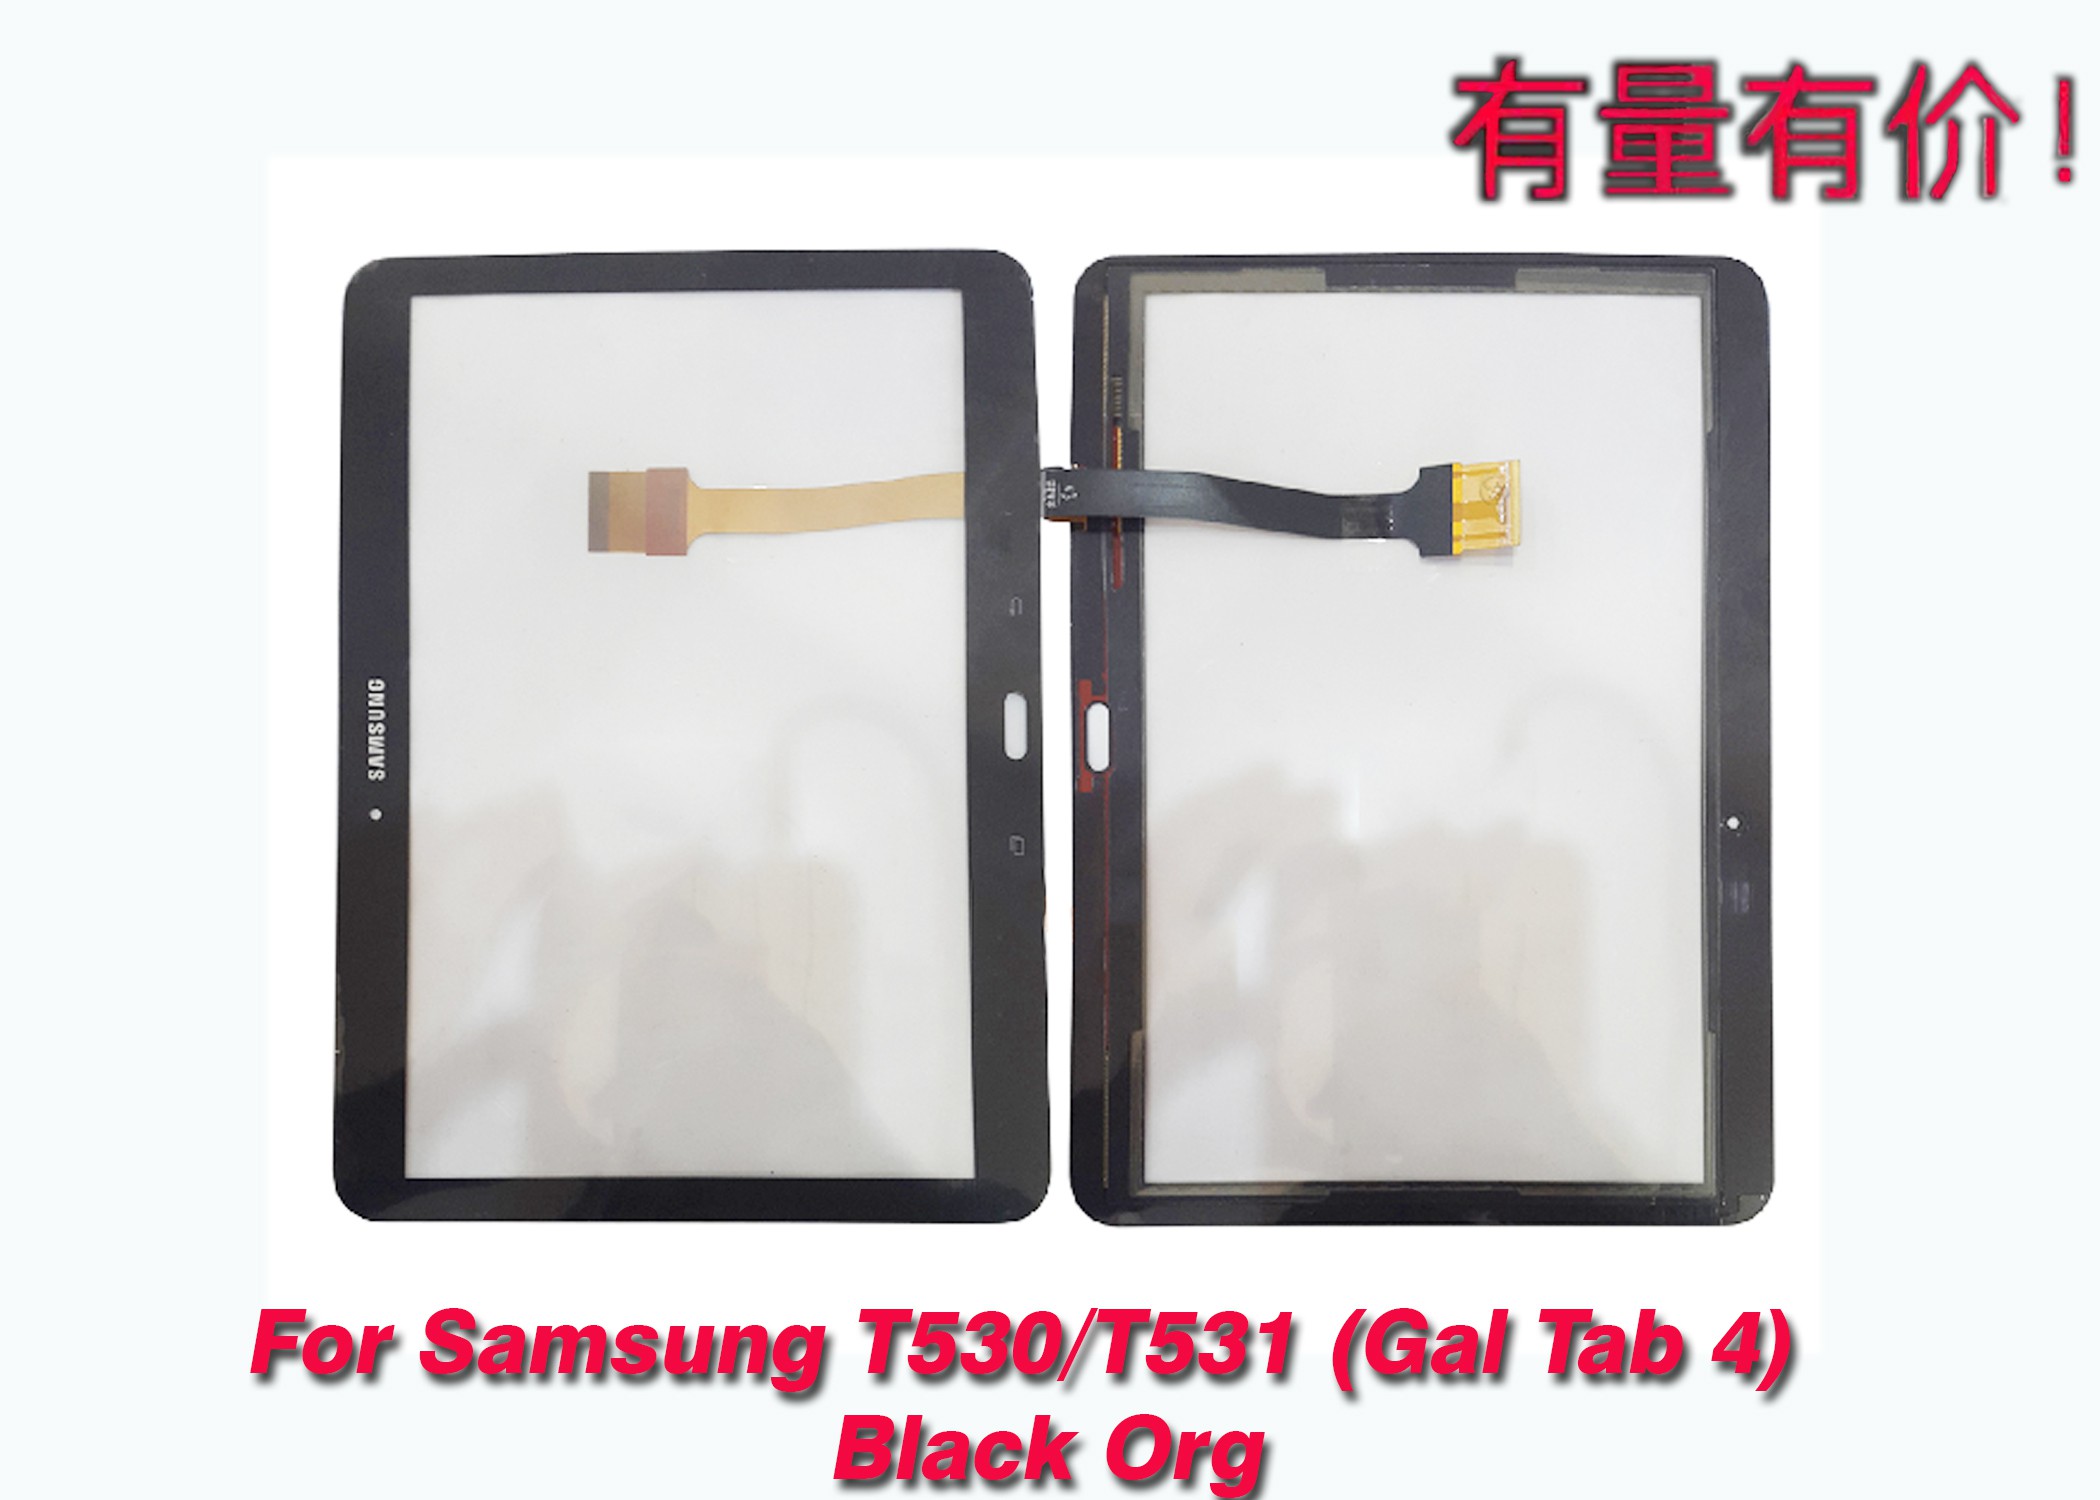 Màn Hình Cảm Ứng Thay Thế Cho Samsung T530 - T531 - Gal Tab 4 - Black Org - Ts Sms